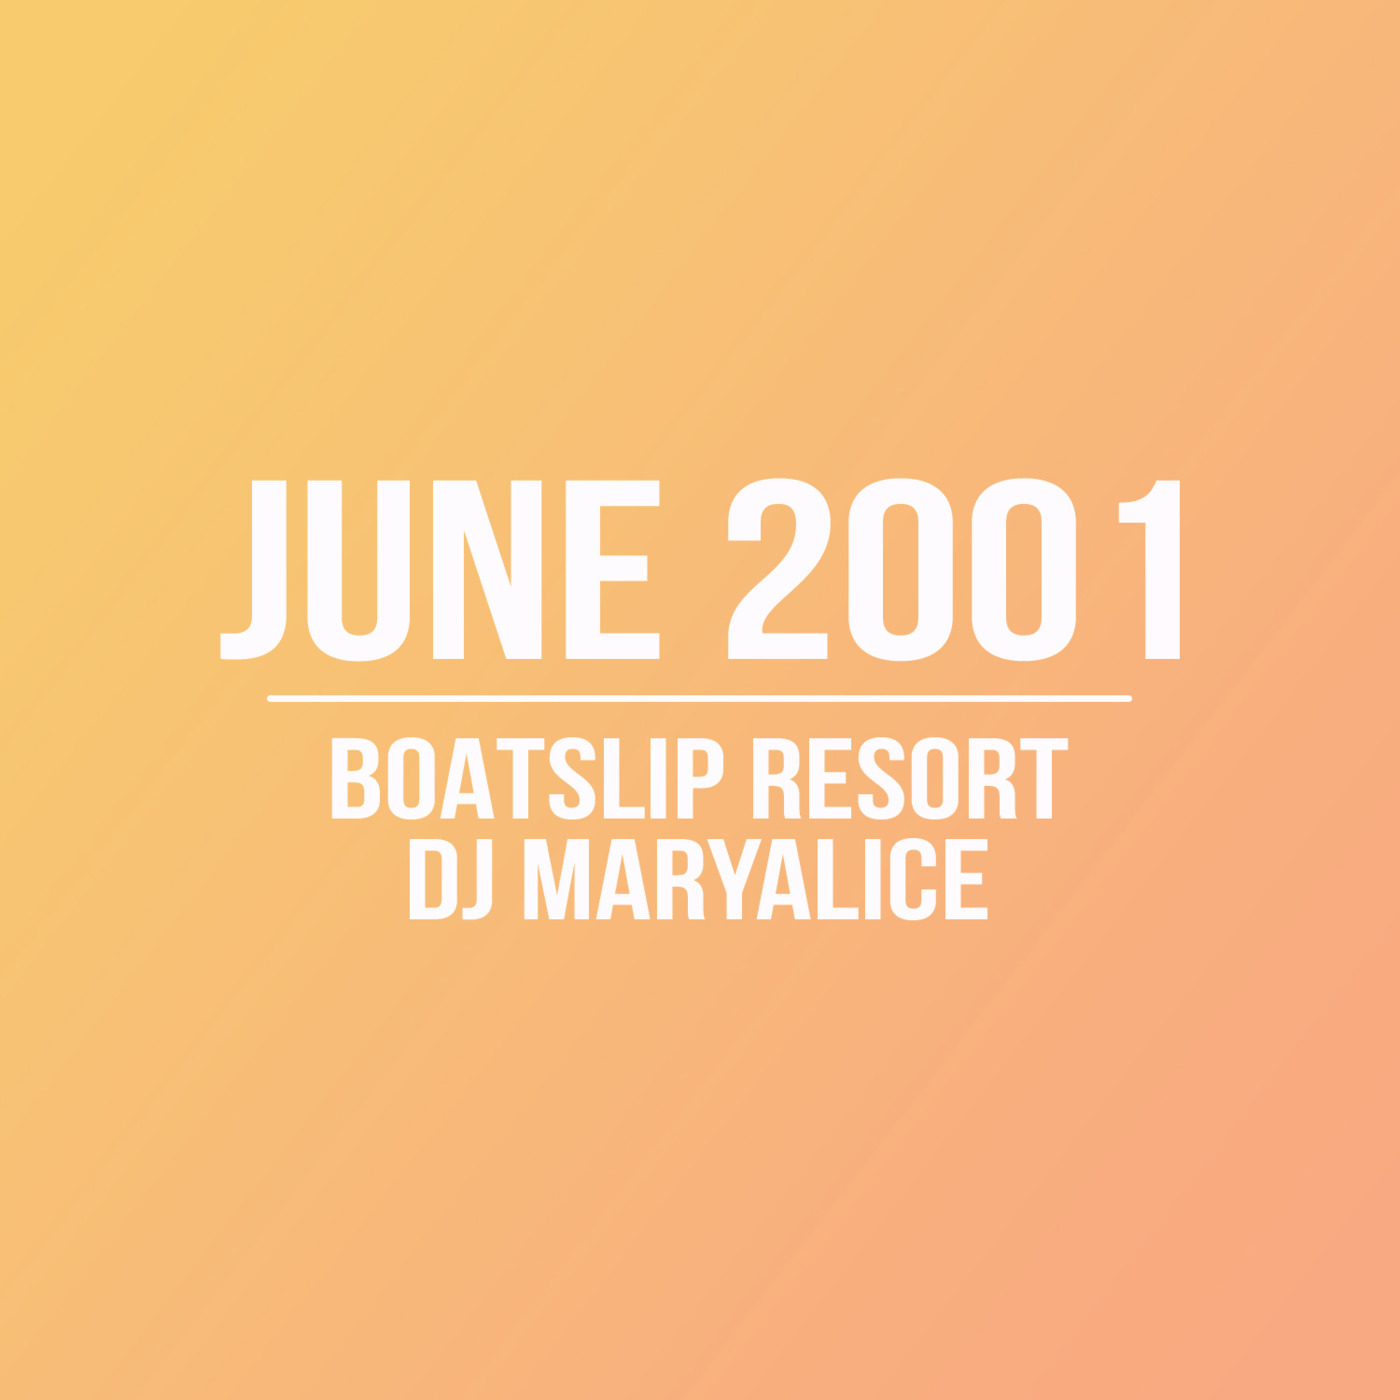 Episode 18: DJ Maryalice@ The Boatslip Resort | June 2001